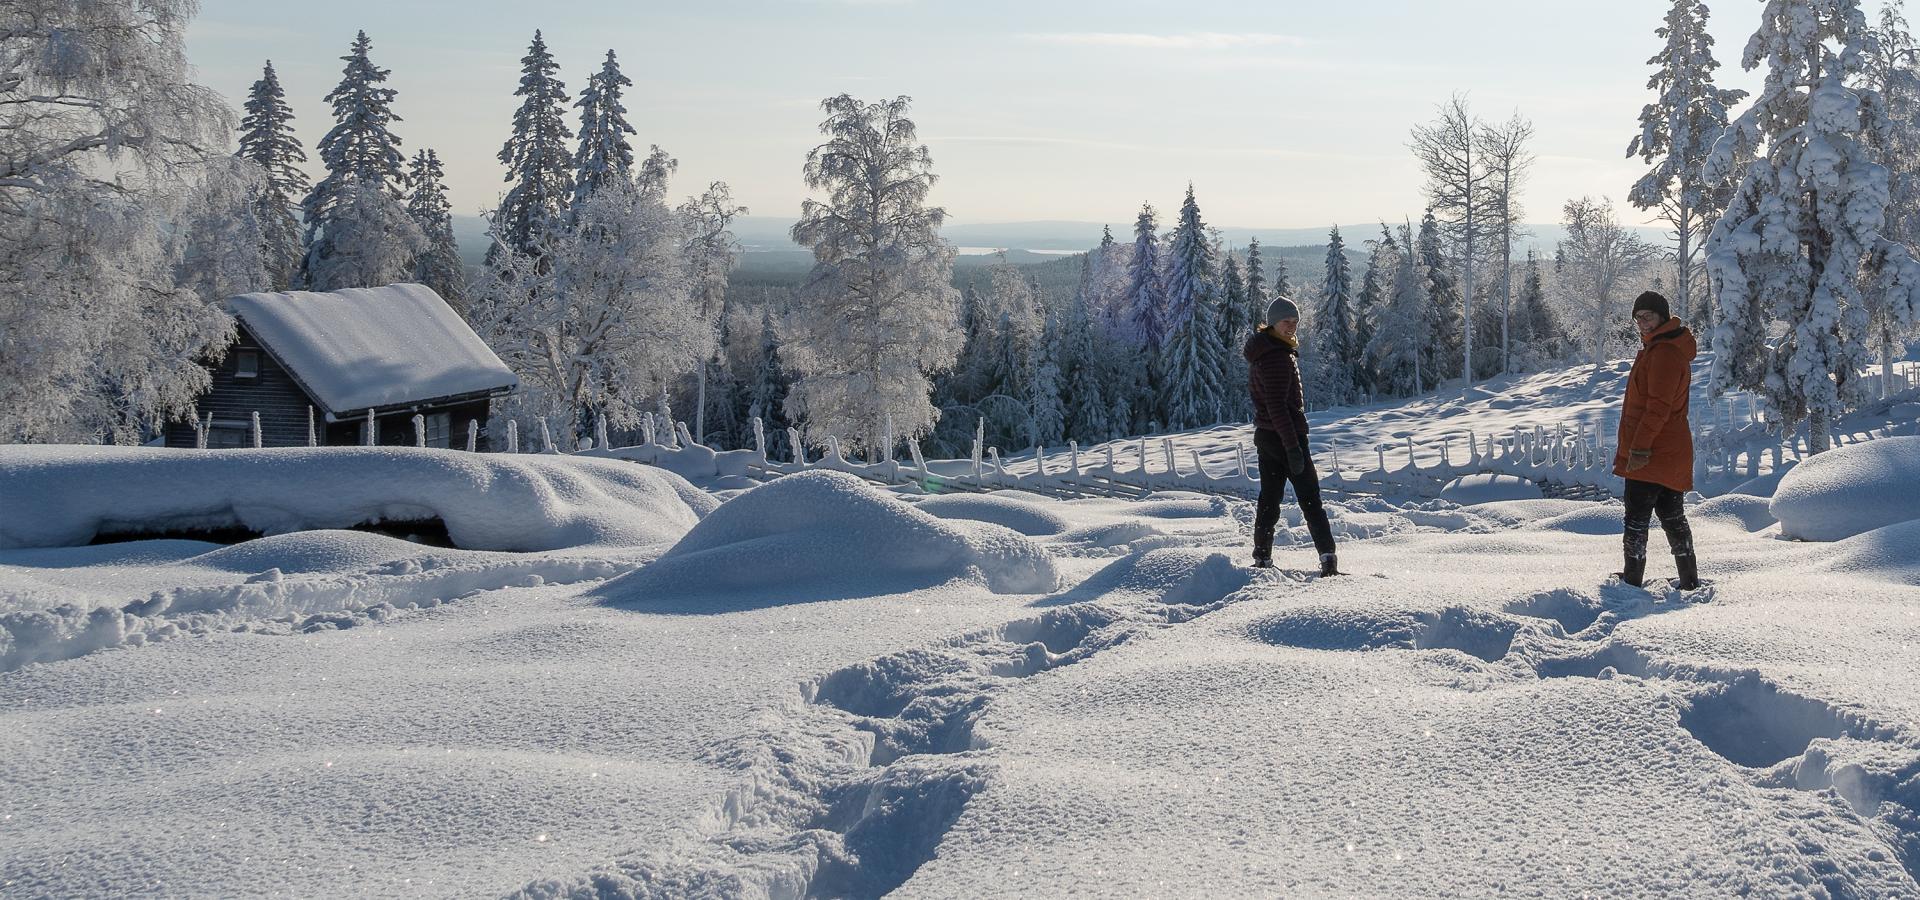 Två personer på snöskor i vintrigt landskap.